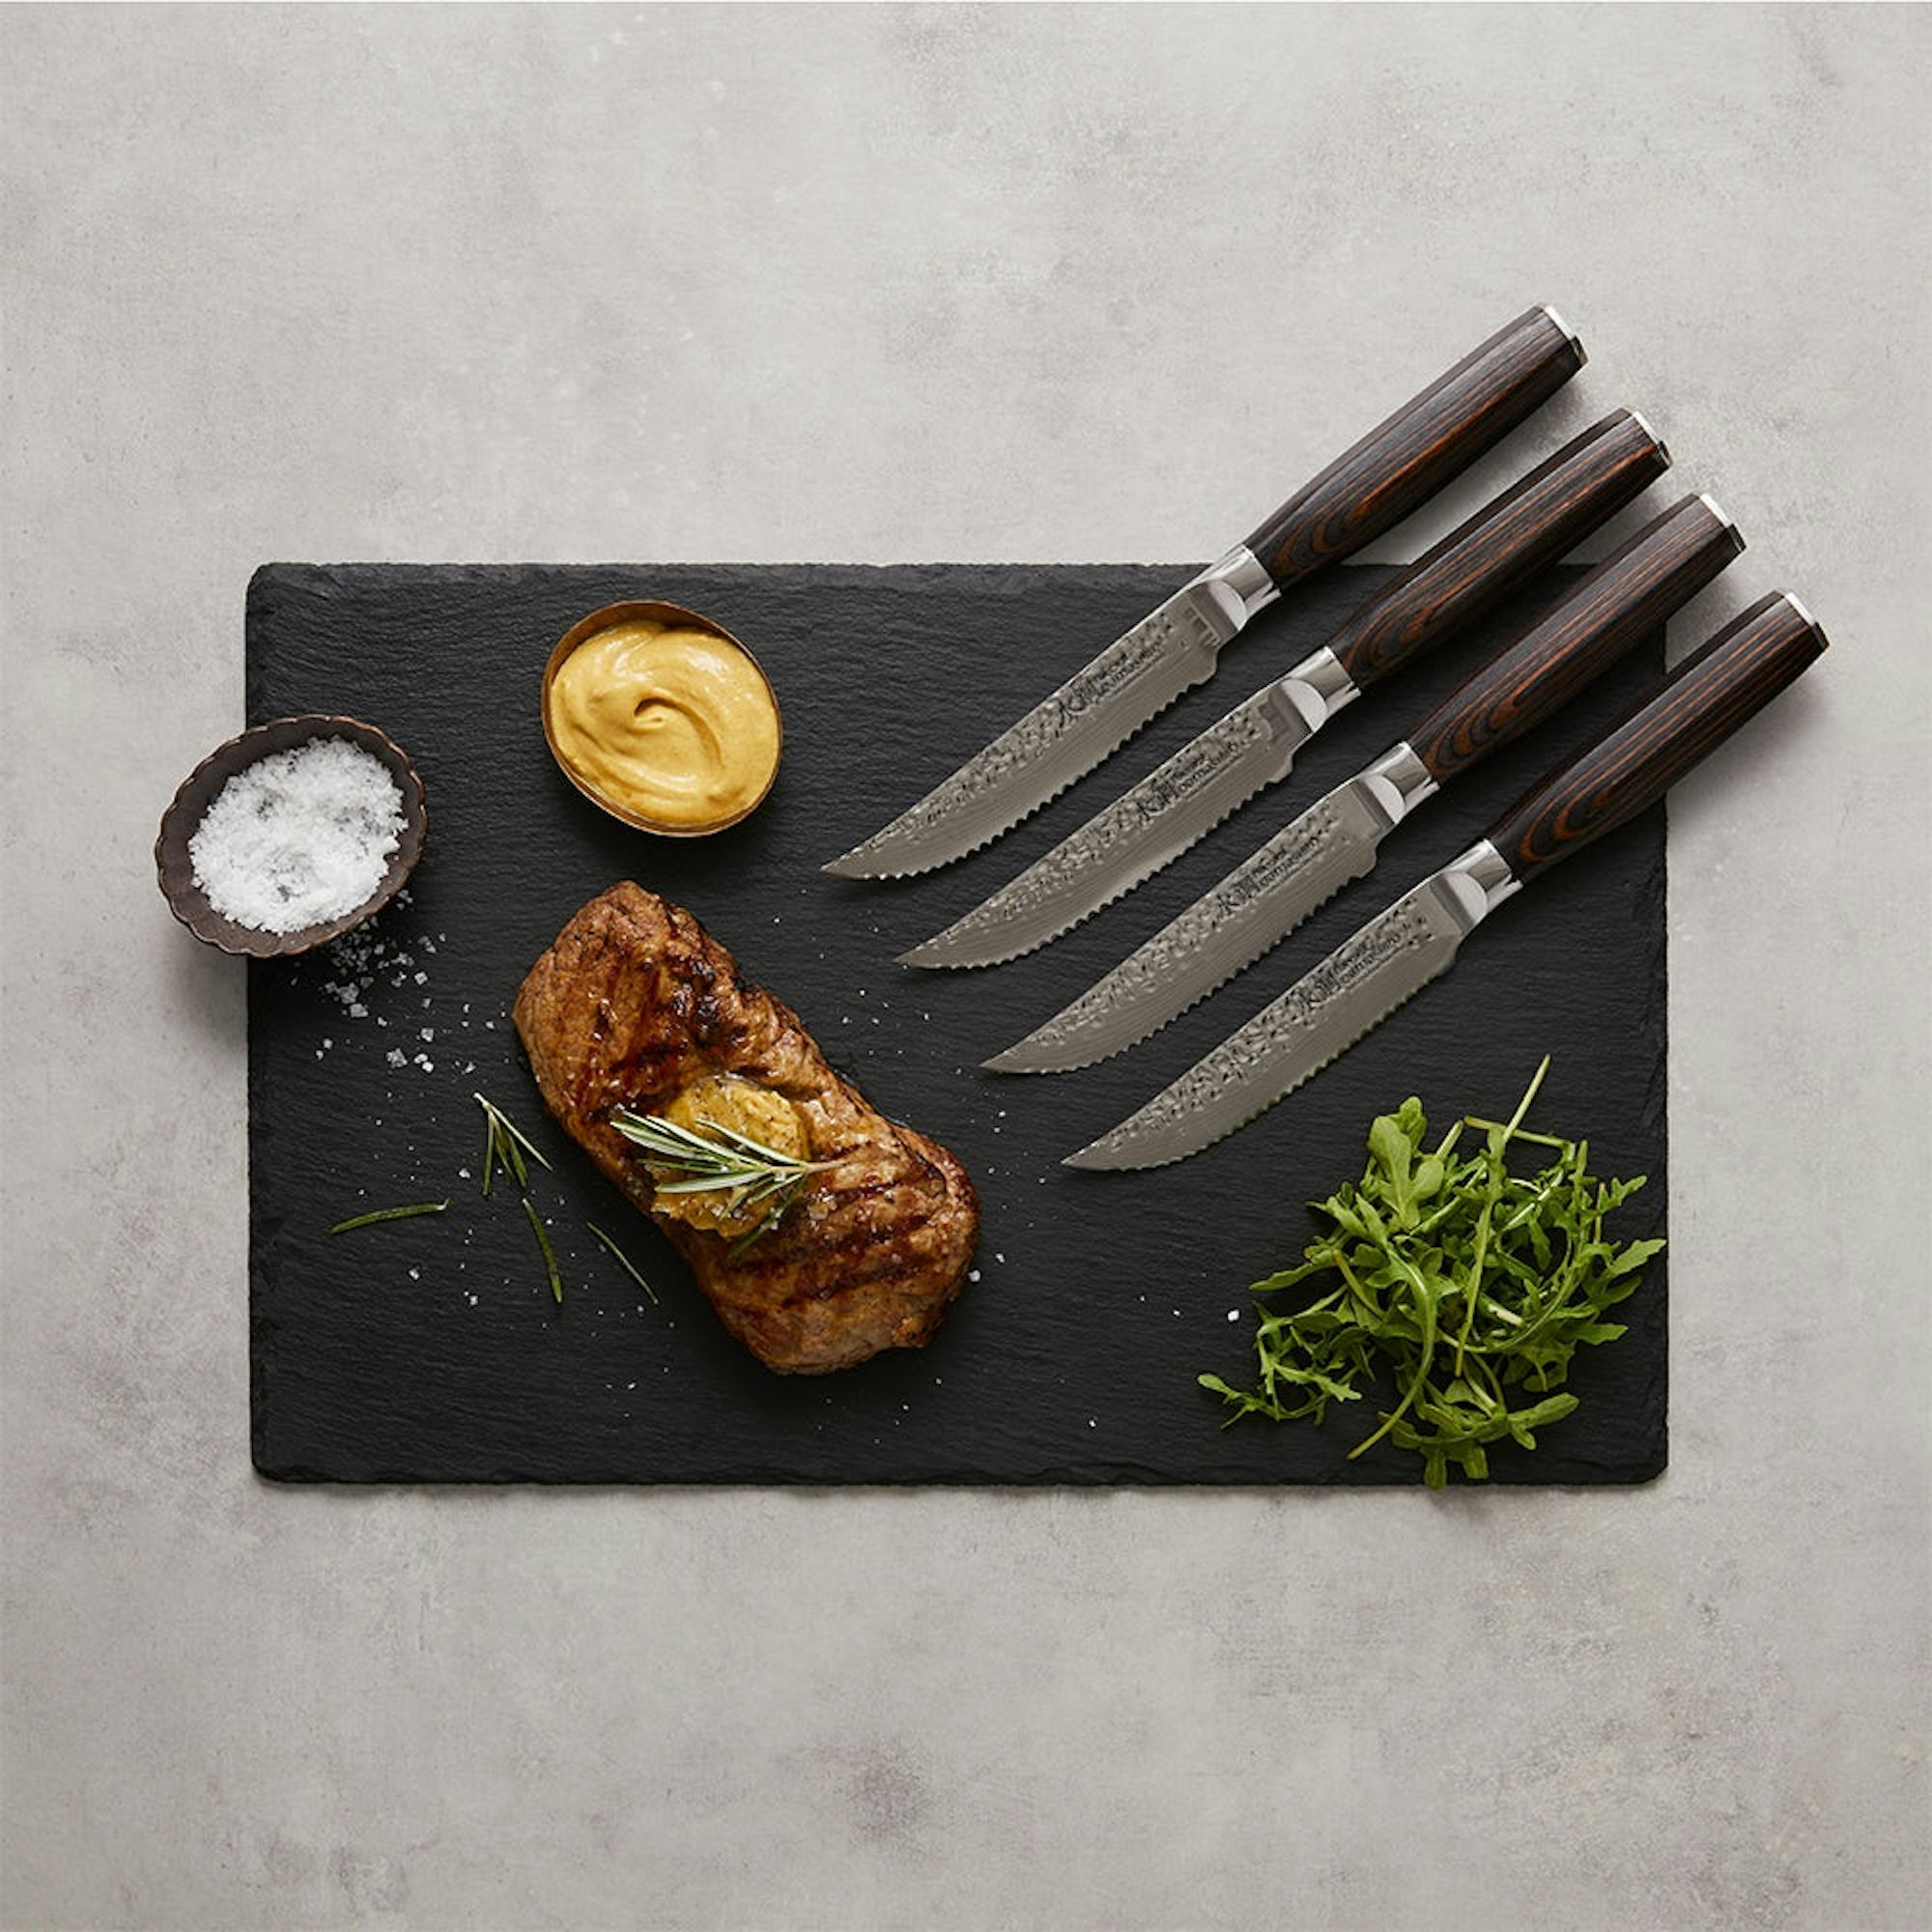 Grill reverse seared steak on black board with steak knives